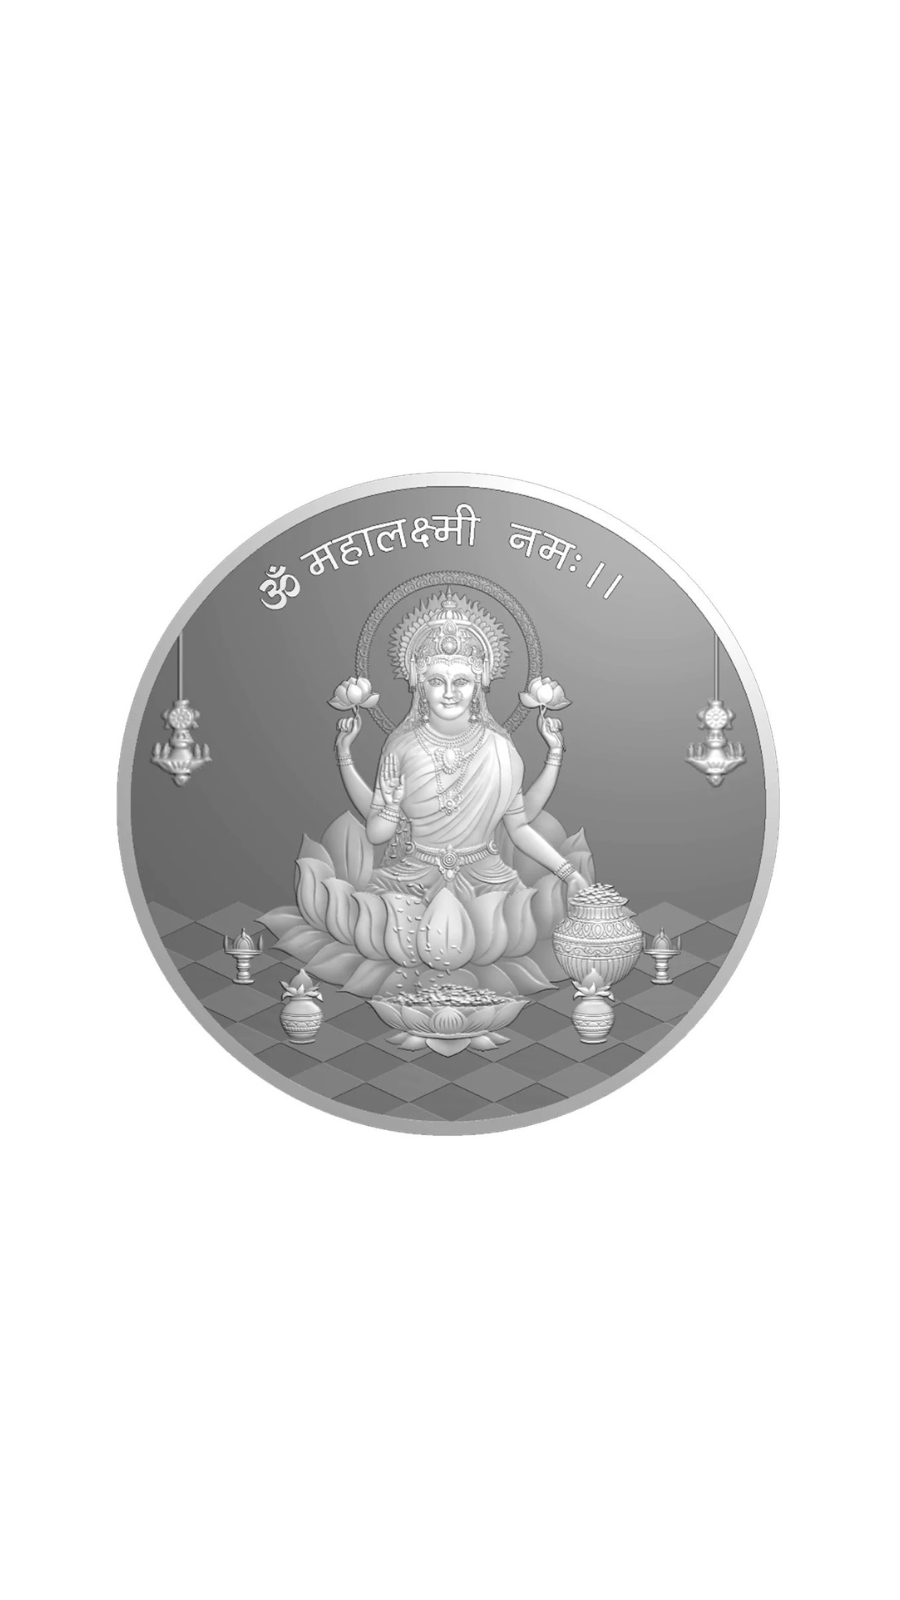 Load image into Gallery viewer, 3D Mahalaxmi Ji 999 Silver Coin
